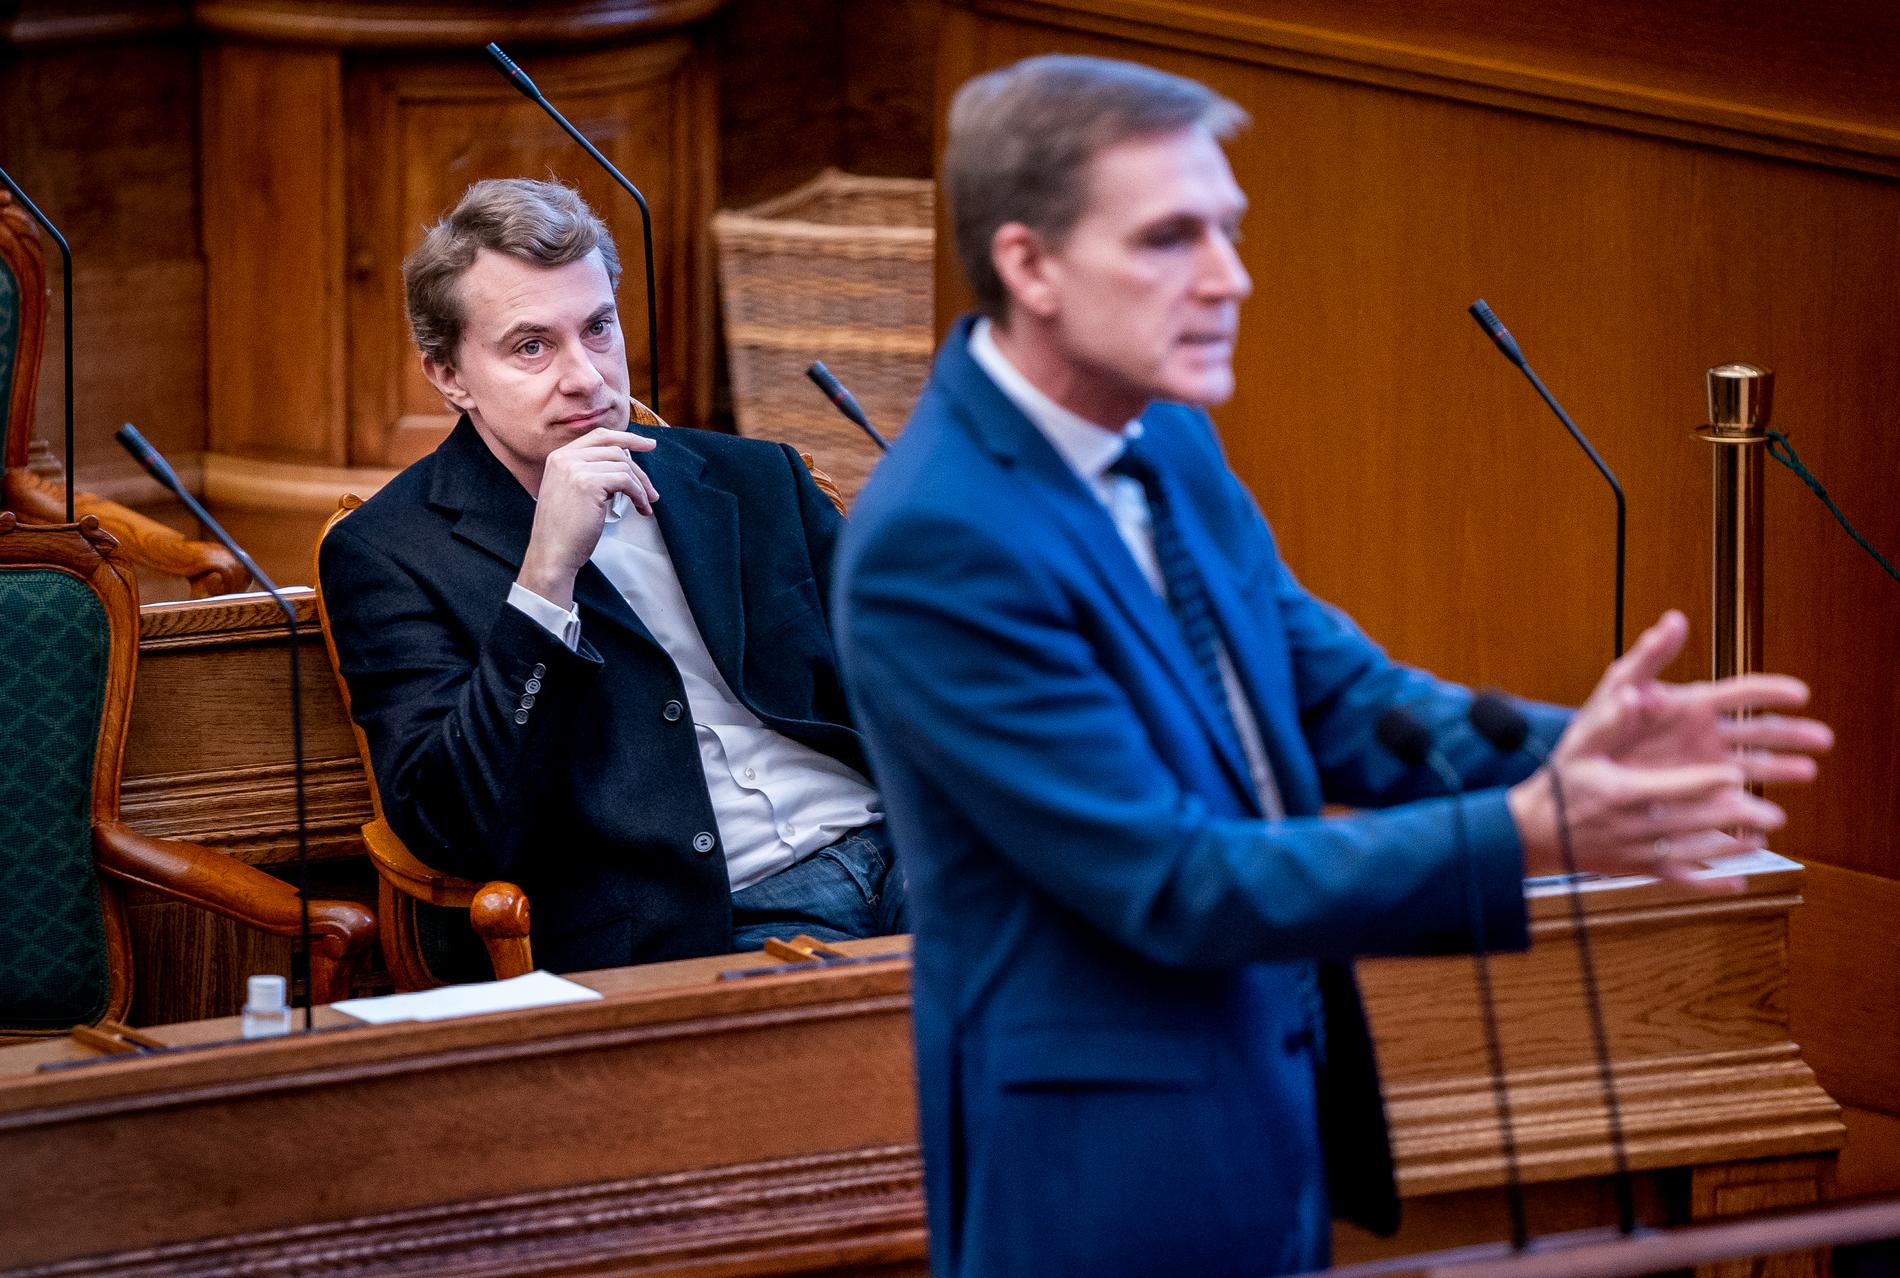 Morten Messerschmidt (till vänster) är favorit till att ta över som partiledare i Dansk Folkeparti efter Kristian Thulesen Dahl, som här ses i förgrunden. Arkivbild.